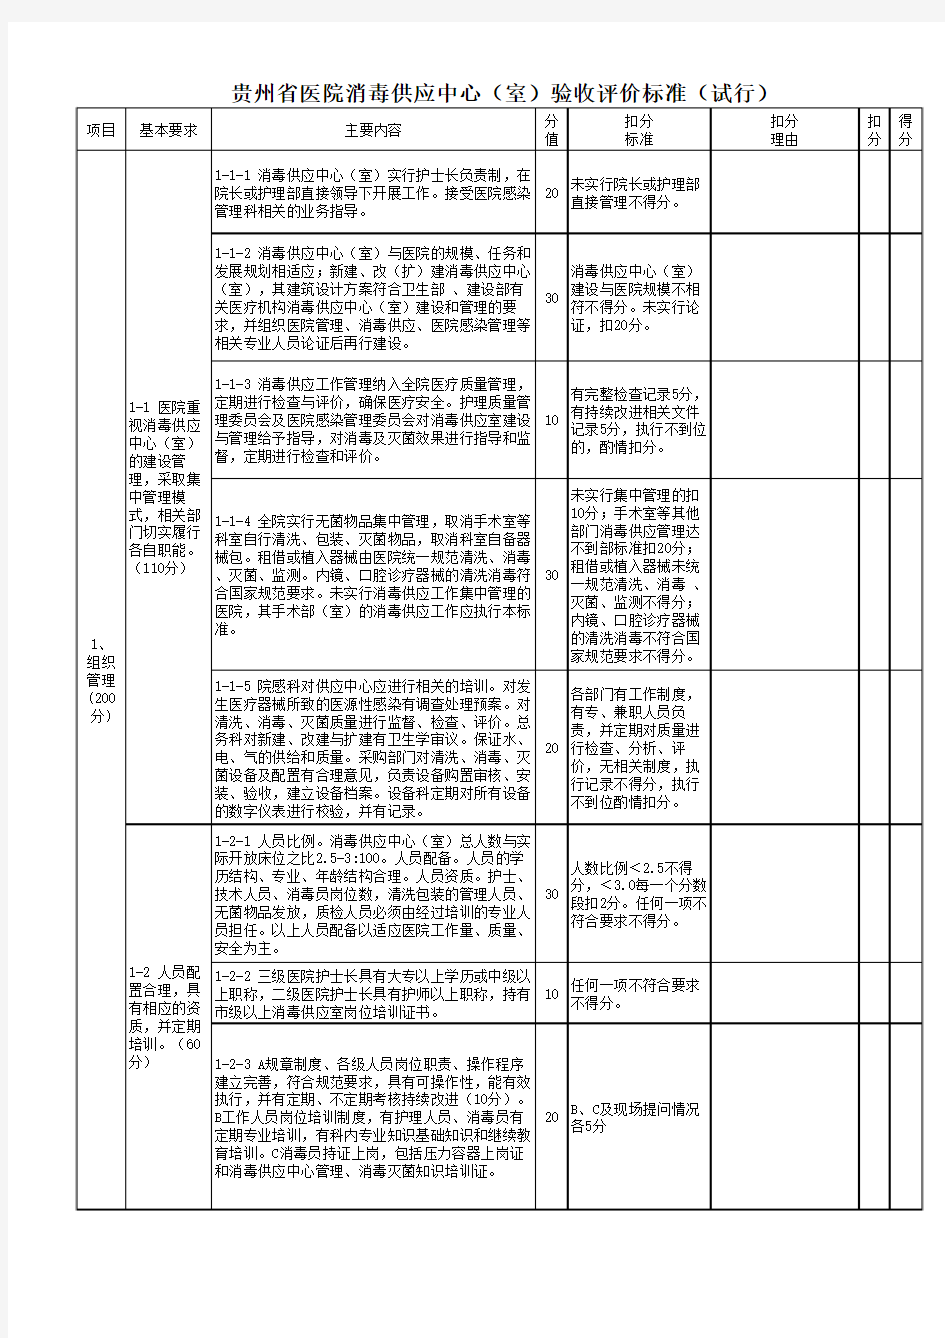 贵州省医院消毒供应中心(室)验收评价标准(试行)